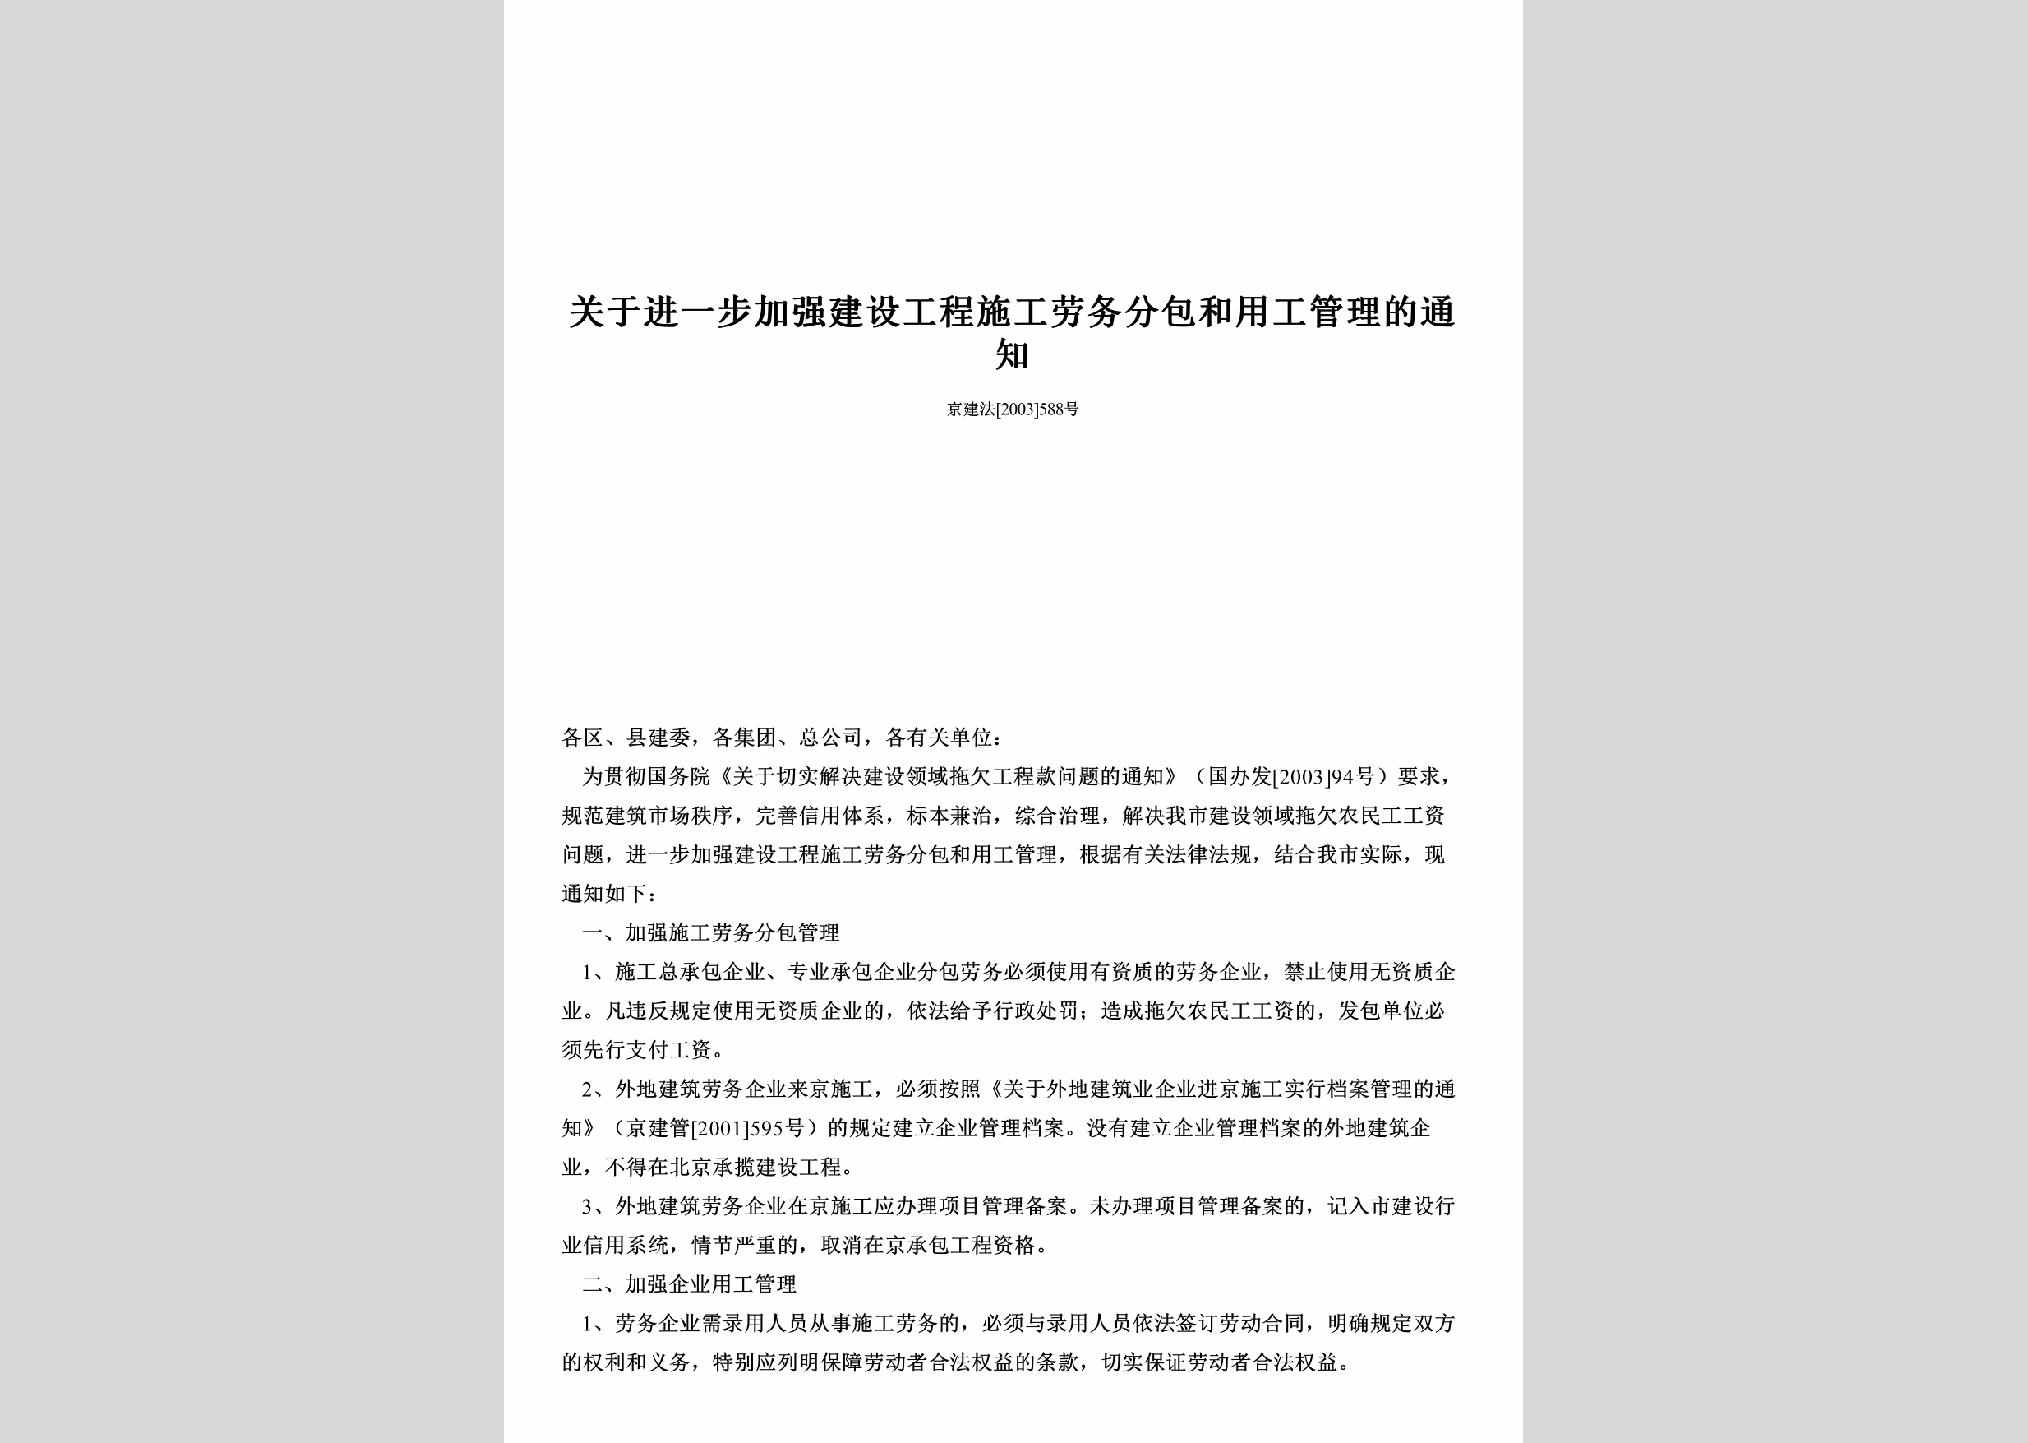 京建法[2003]588号：关于进一步加强建设工程施工劳务分包和用工管理的通知